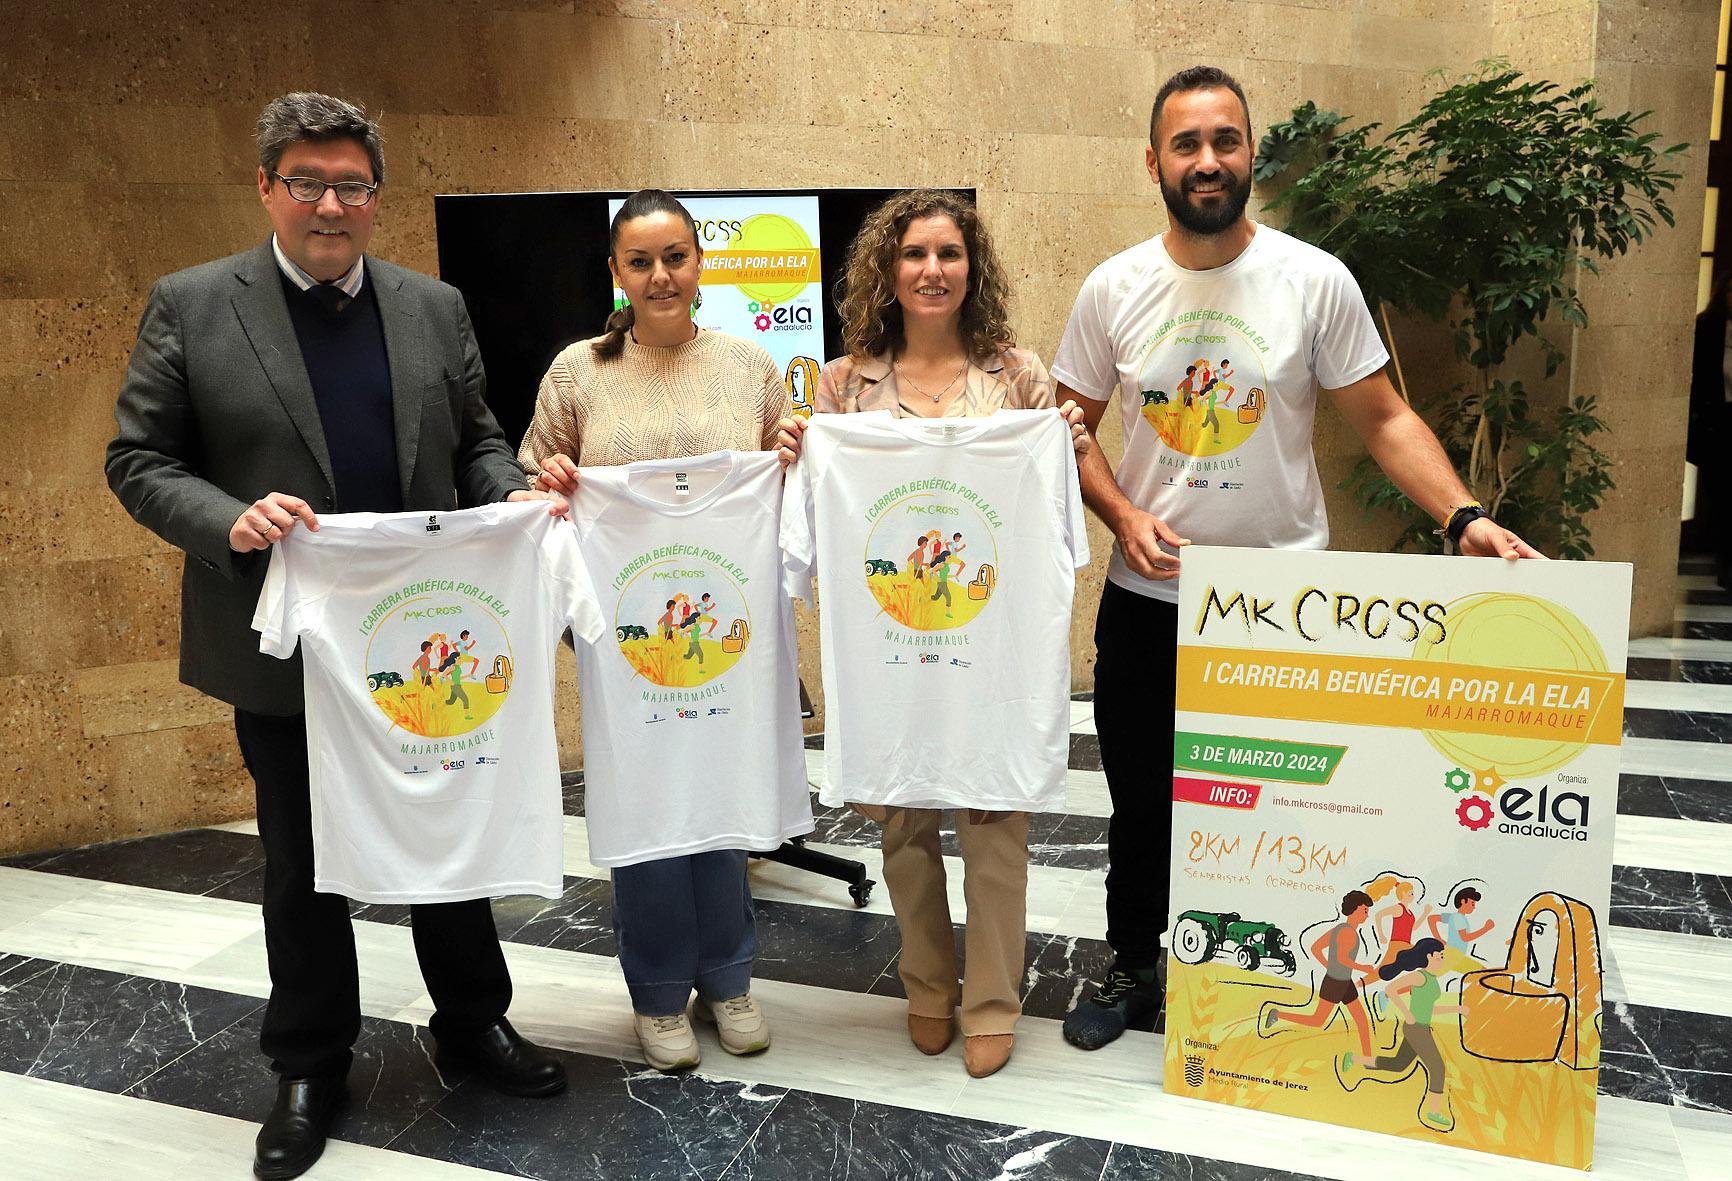 La MK Cross I Carrera Benéfica de Majarromaque a favor de la Asociación de Andaluza de ELA se celebrará el 3 de marzo